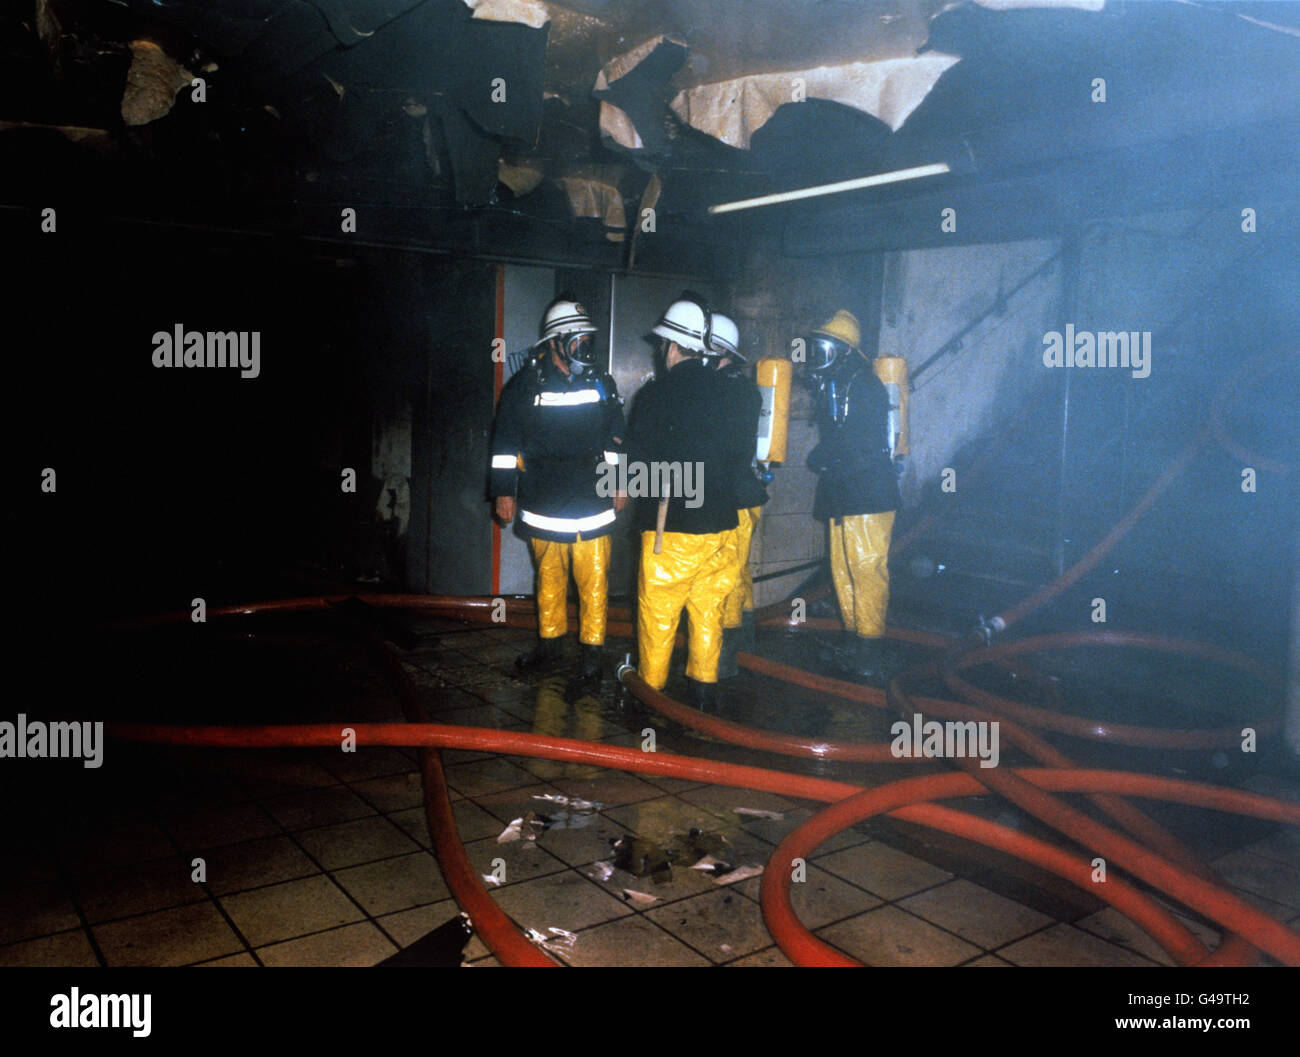 Bei einem Großbrand in Londons verkehrsreichster U-Bahnstation Kings Cross starben mindestens 31 Menschen und es wurden zahlreiche Verletzte verübt. Feuerwehrleute sind hier in den schwelenden Überresten der Hauptkartenhalle im Bahnhof zu sehen. Stockfoto